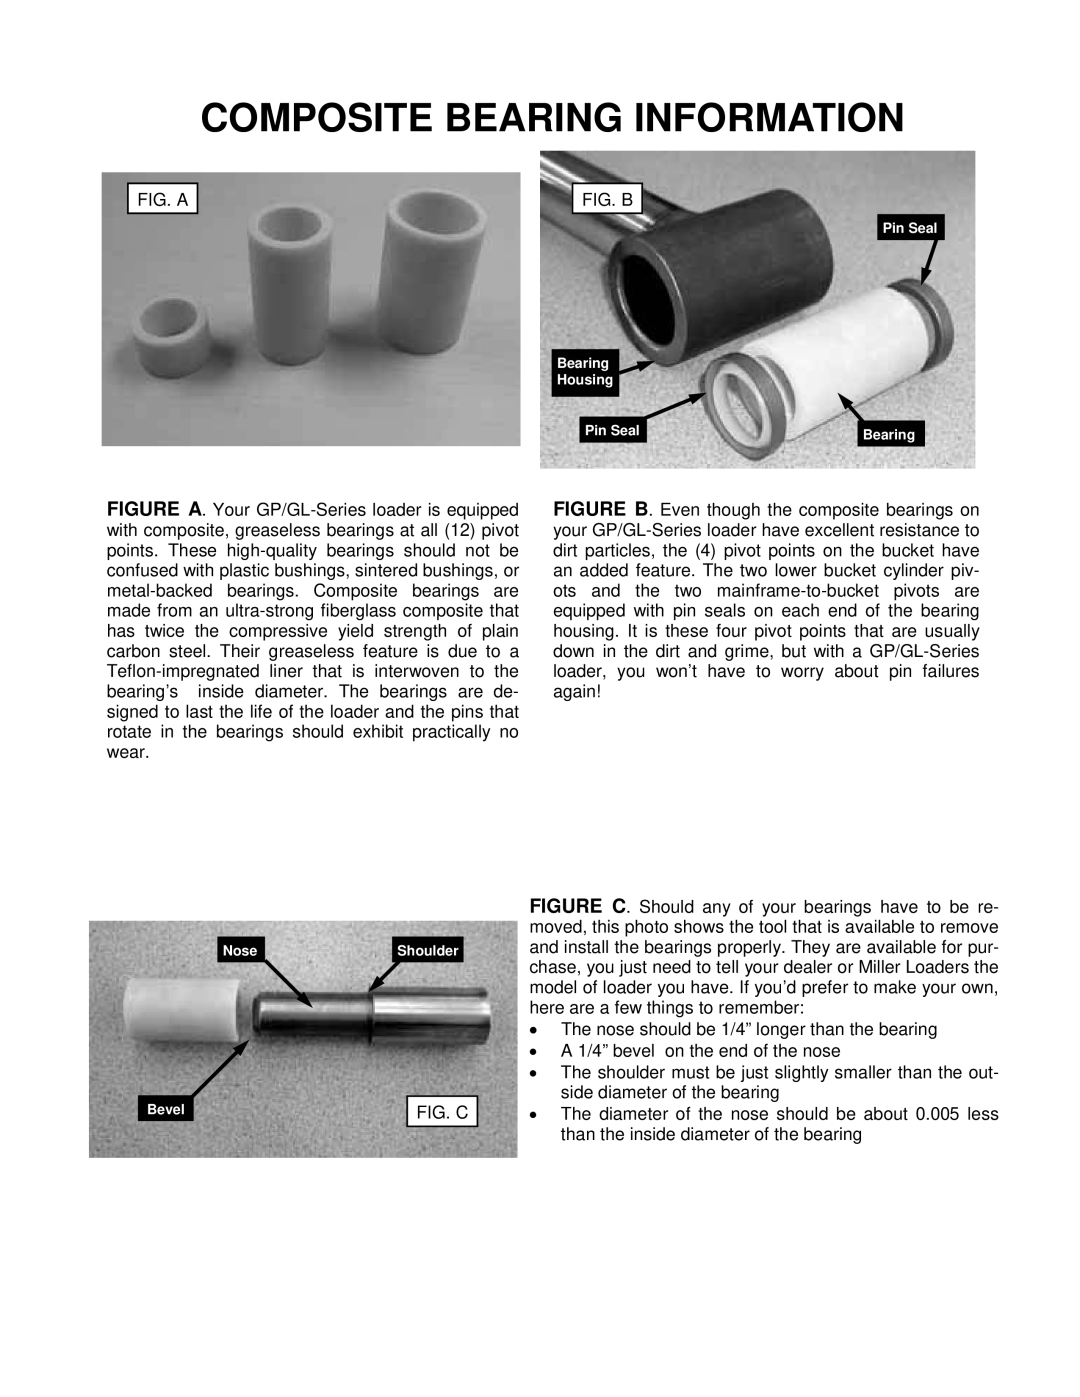 MK Sound GP25 owner manual Composite Bearing Information, Fig. C 